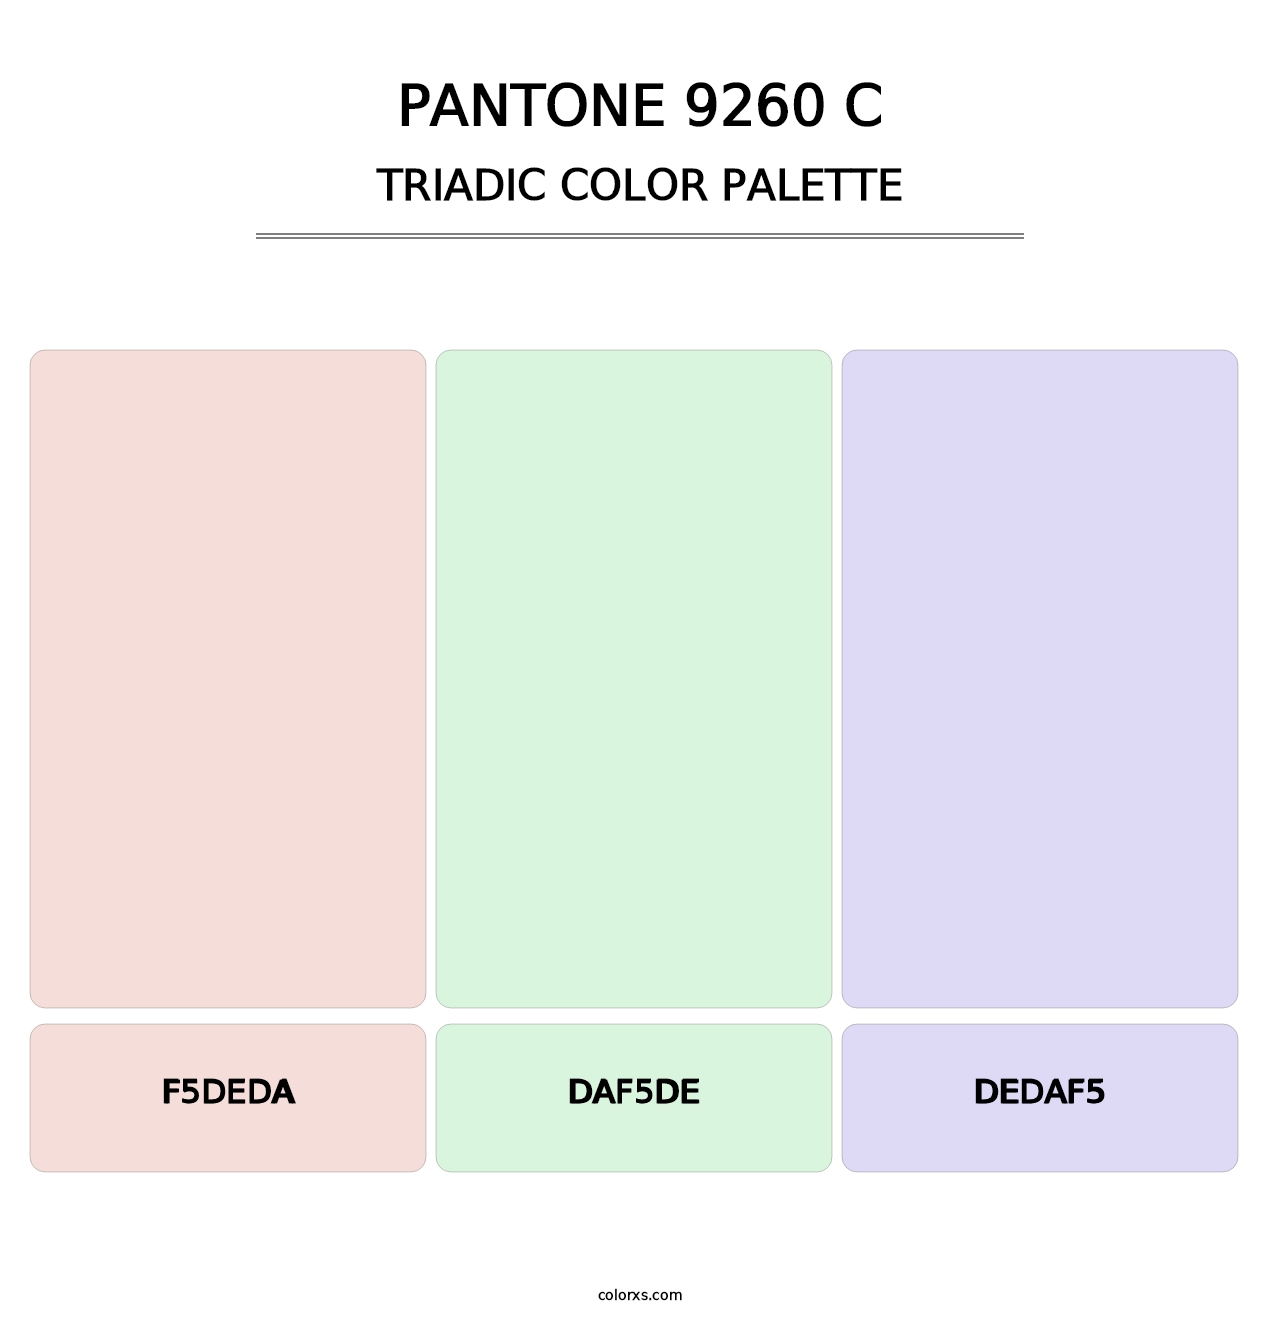 PANTONE 9260 C - Triadic Color Palette